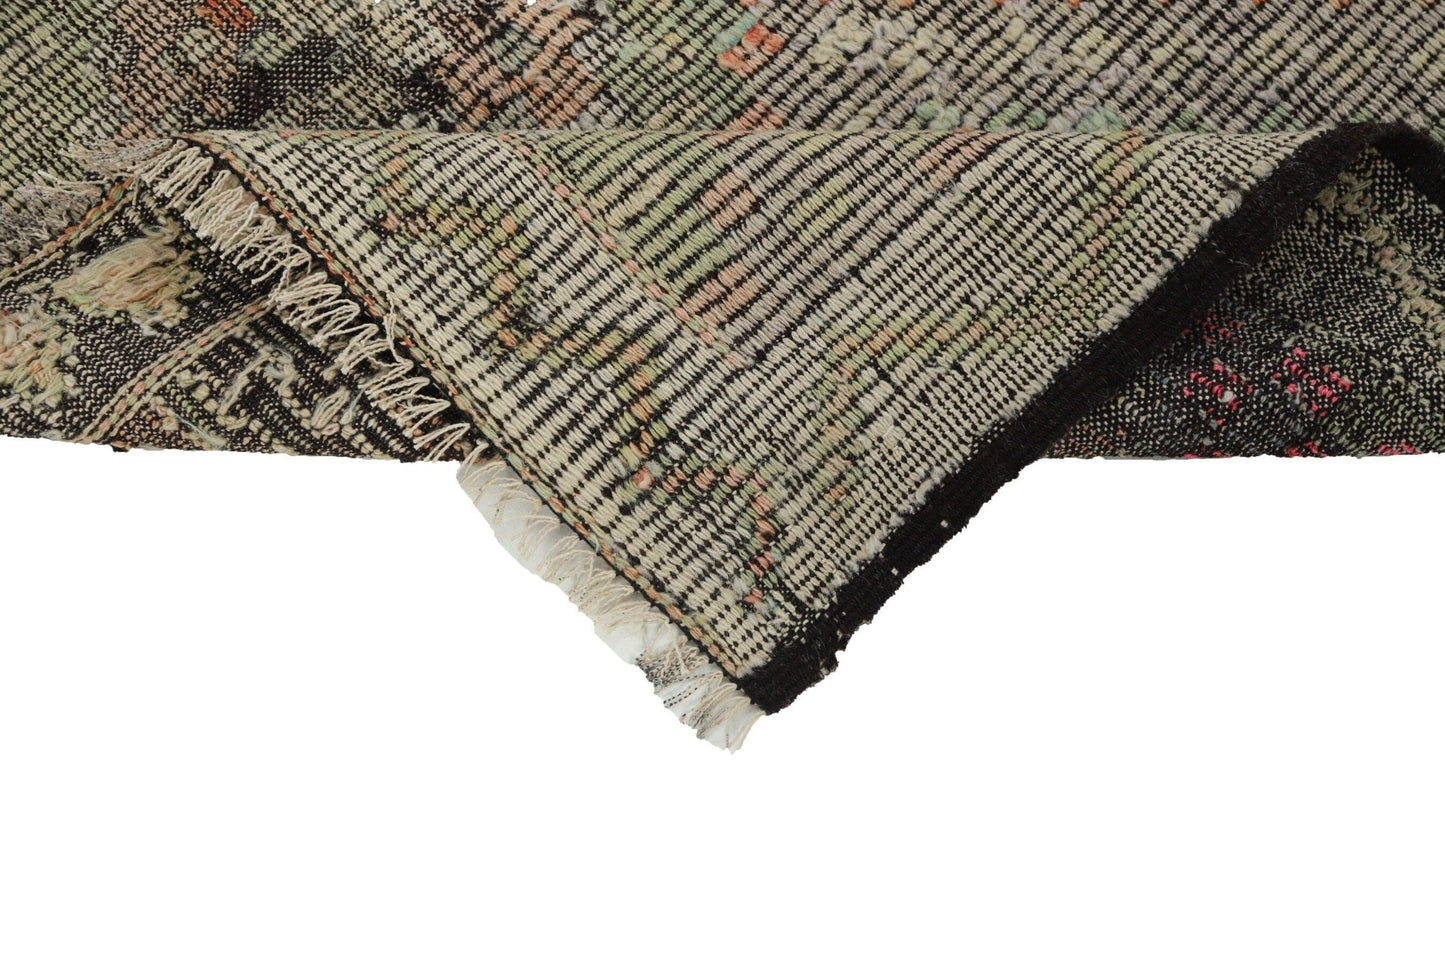 Kilim rug 6x12, Turkish Kilim rug, Vintage Kilim rug, Faded rug, Muted rug, Handmade rug, Pastel rug, Decorative rug, Living room rug, 8167